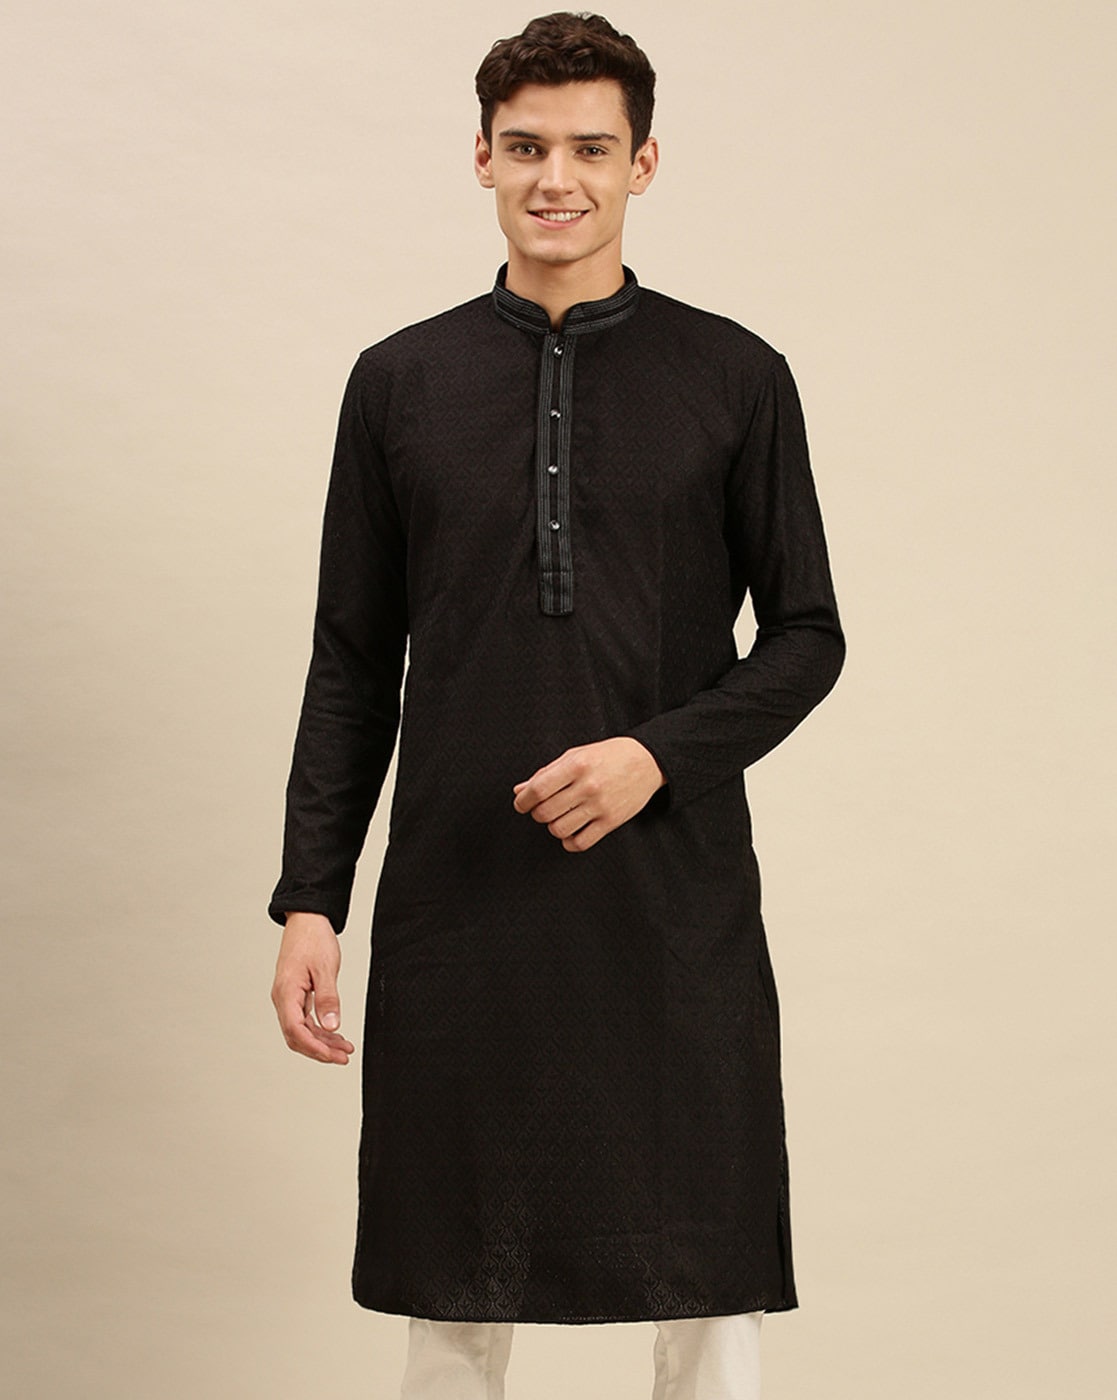 Traditional Indian Men's Suit Pakistan Kurti Long Top - India & Pakistan  Clothing - AliExpress